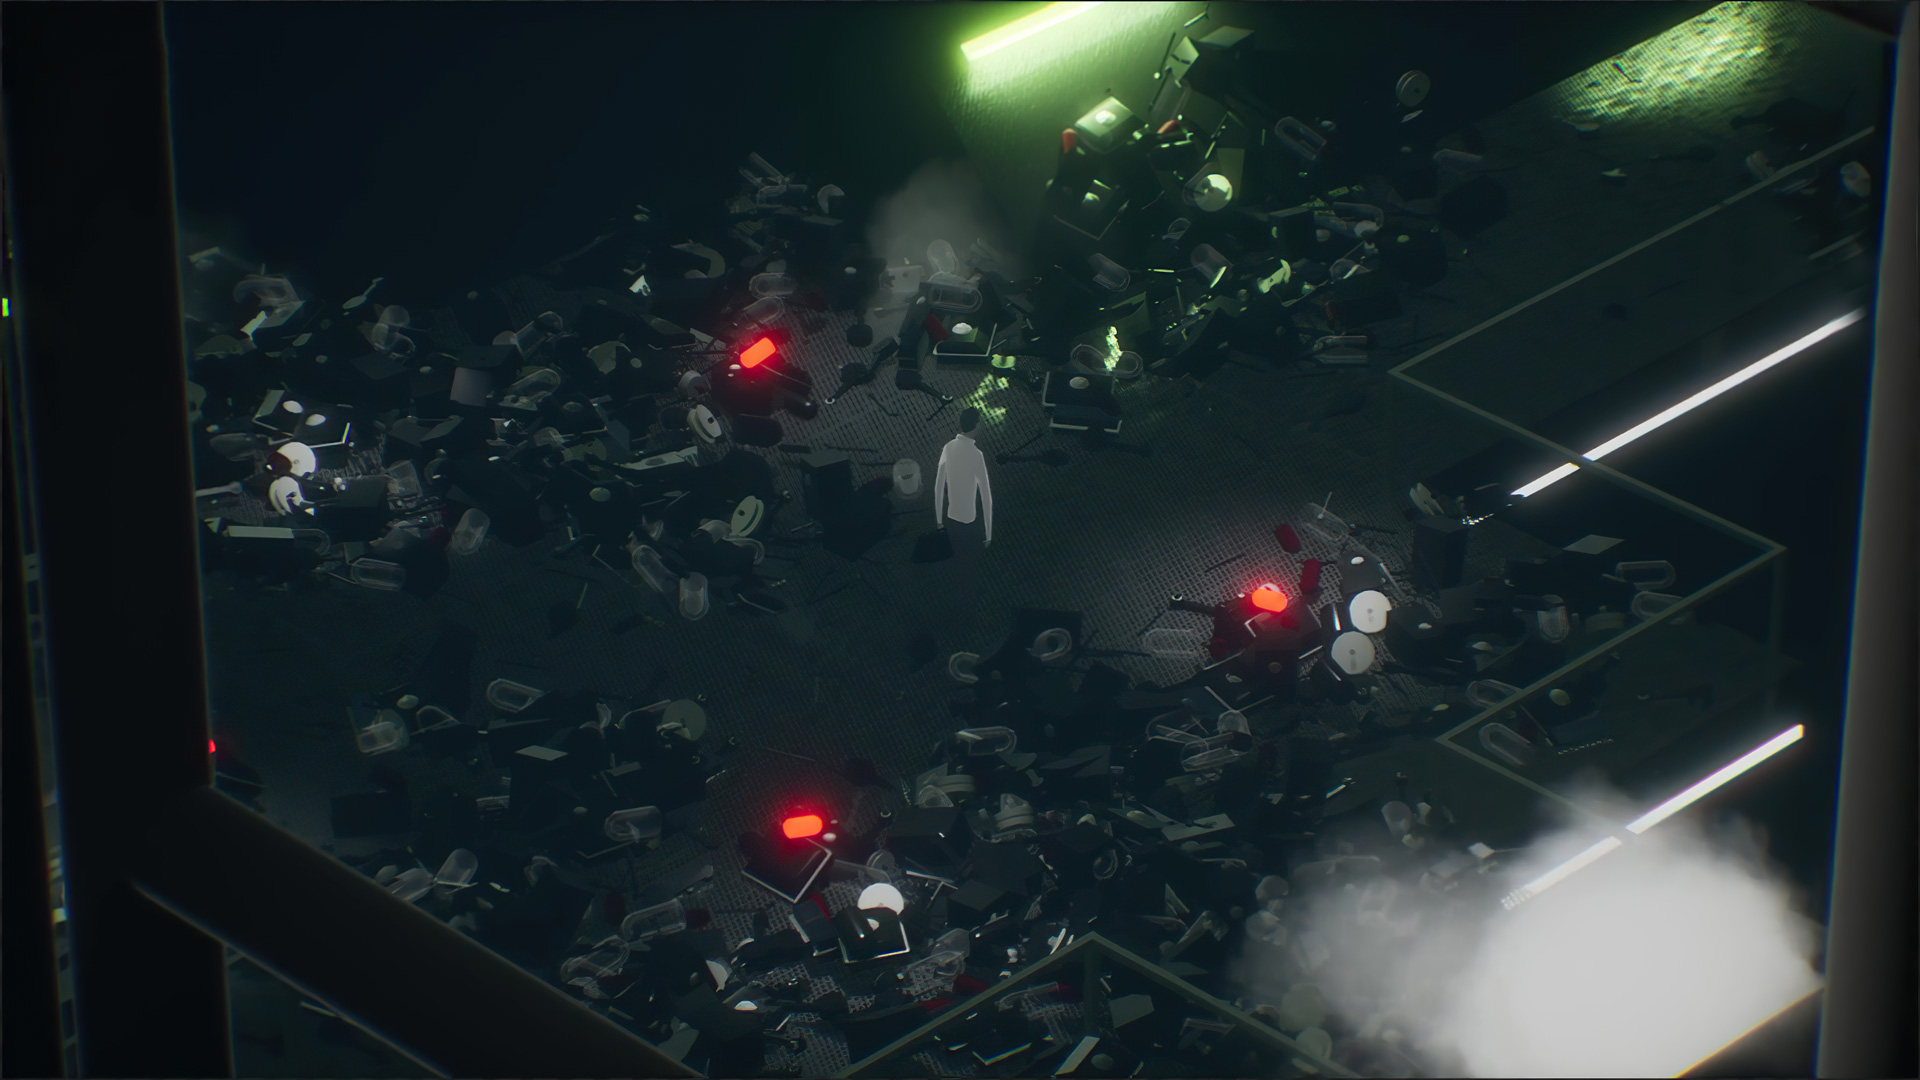 The Plane Effect, jogo de aventura e quebra-cabeça, é anunciado para PC, PS5,  XSX e Switch - GameBlast